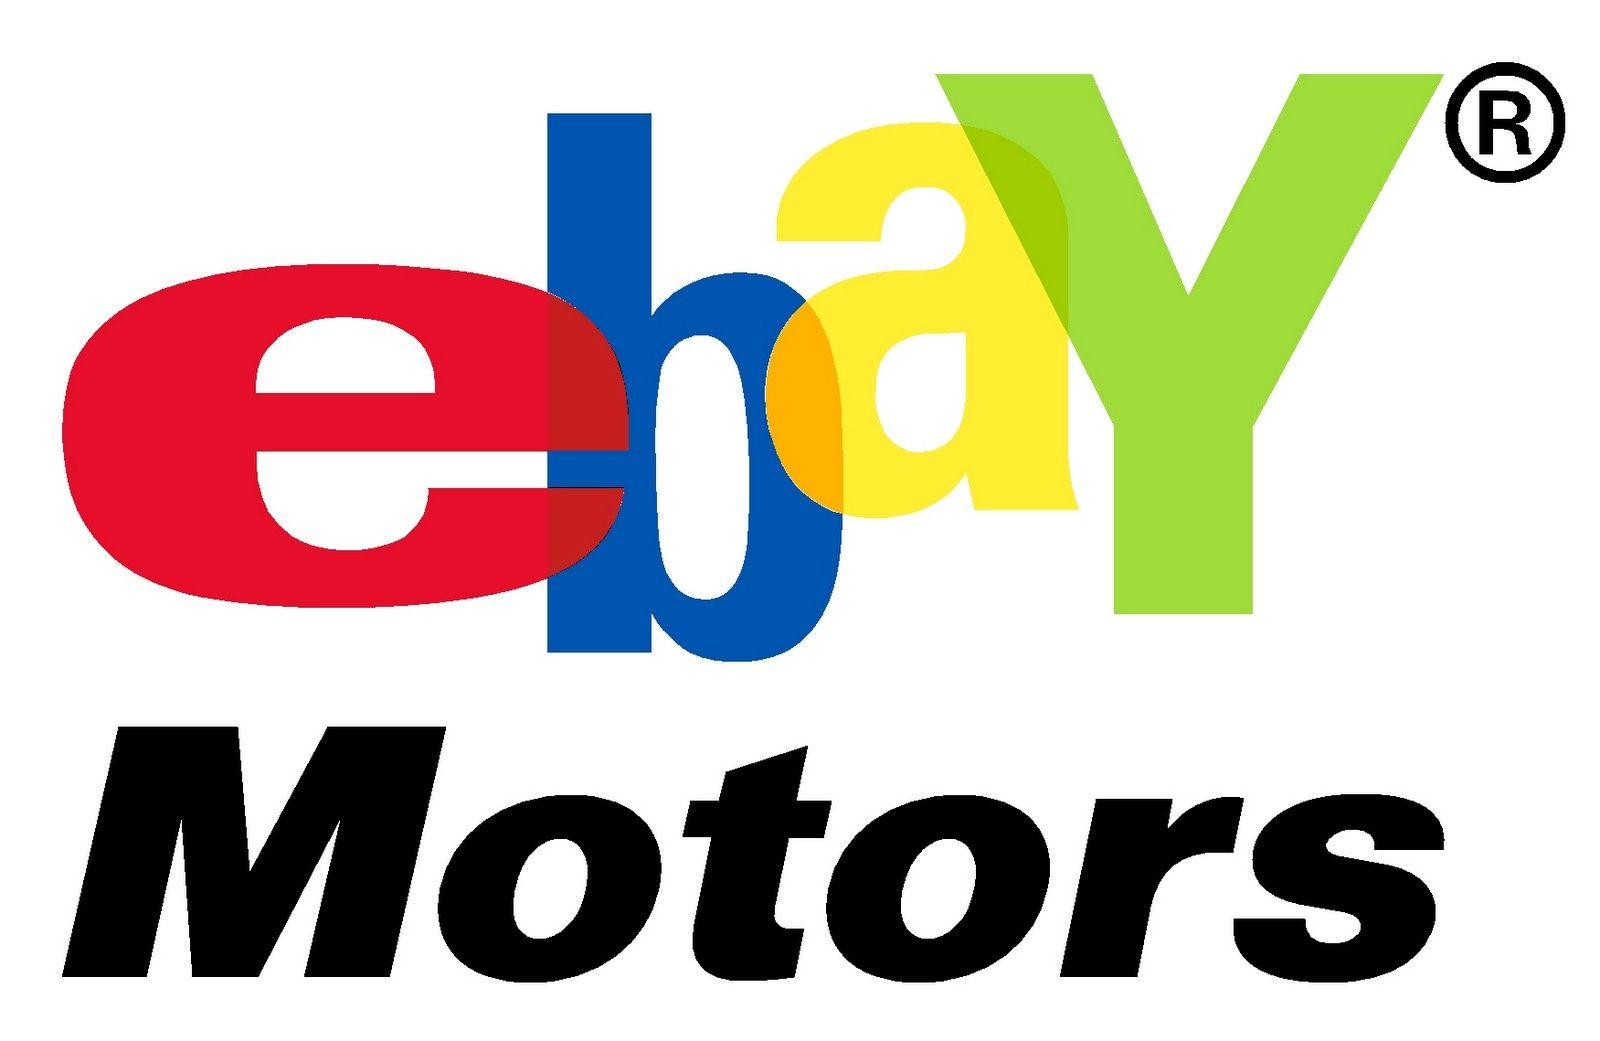 eBay App Logo - 